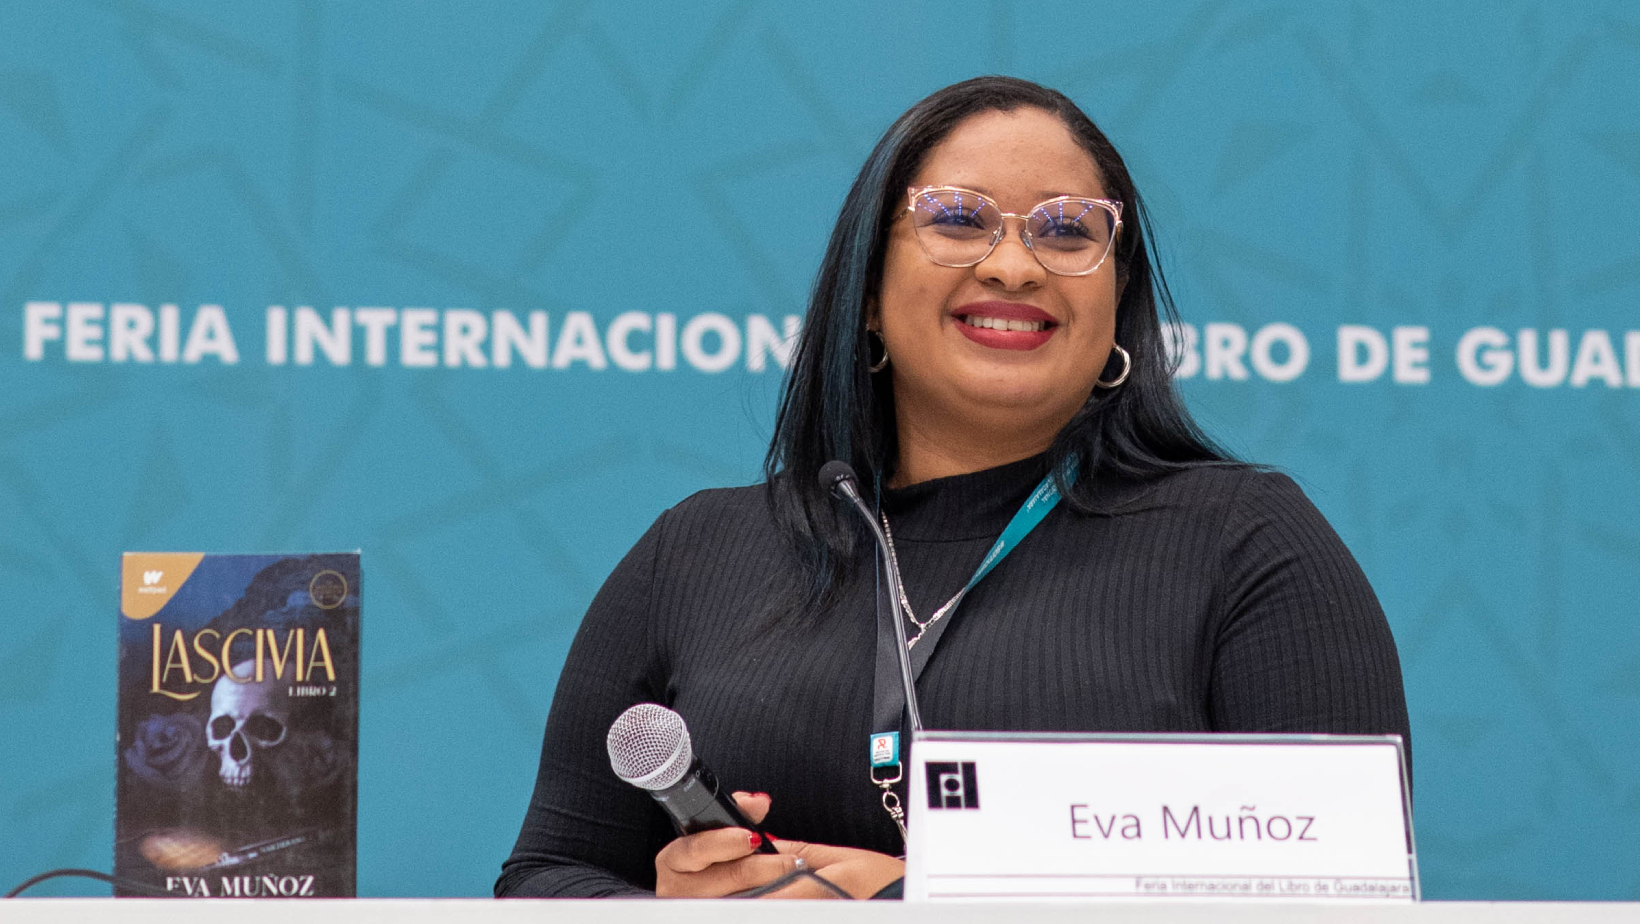 Eva Muñoz, la estrella colombiana de Wattpad, reveló cómo nacieron sus “Pecados placenteros”